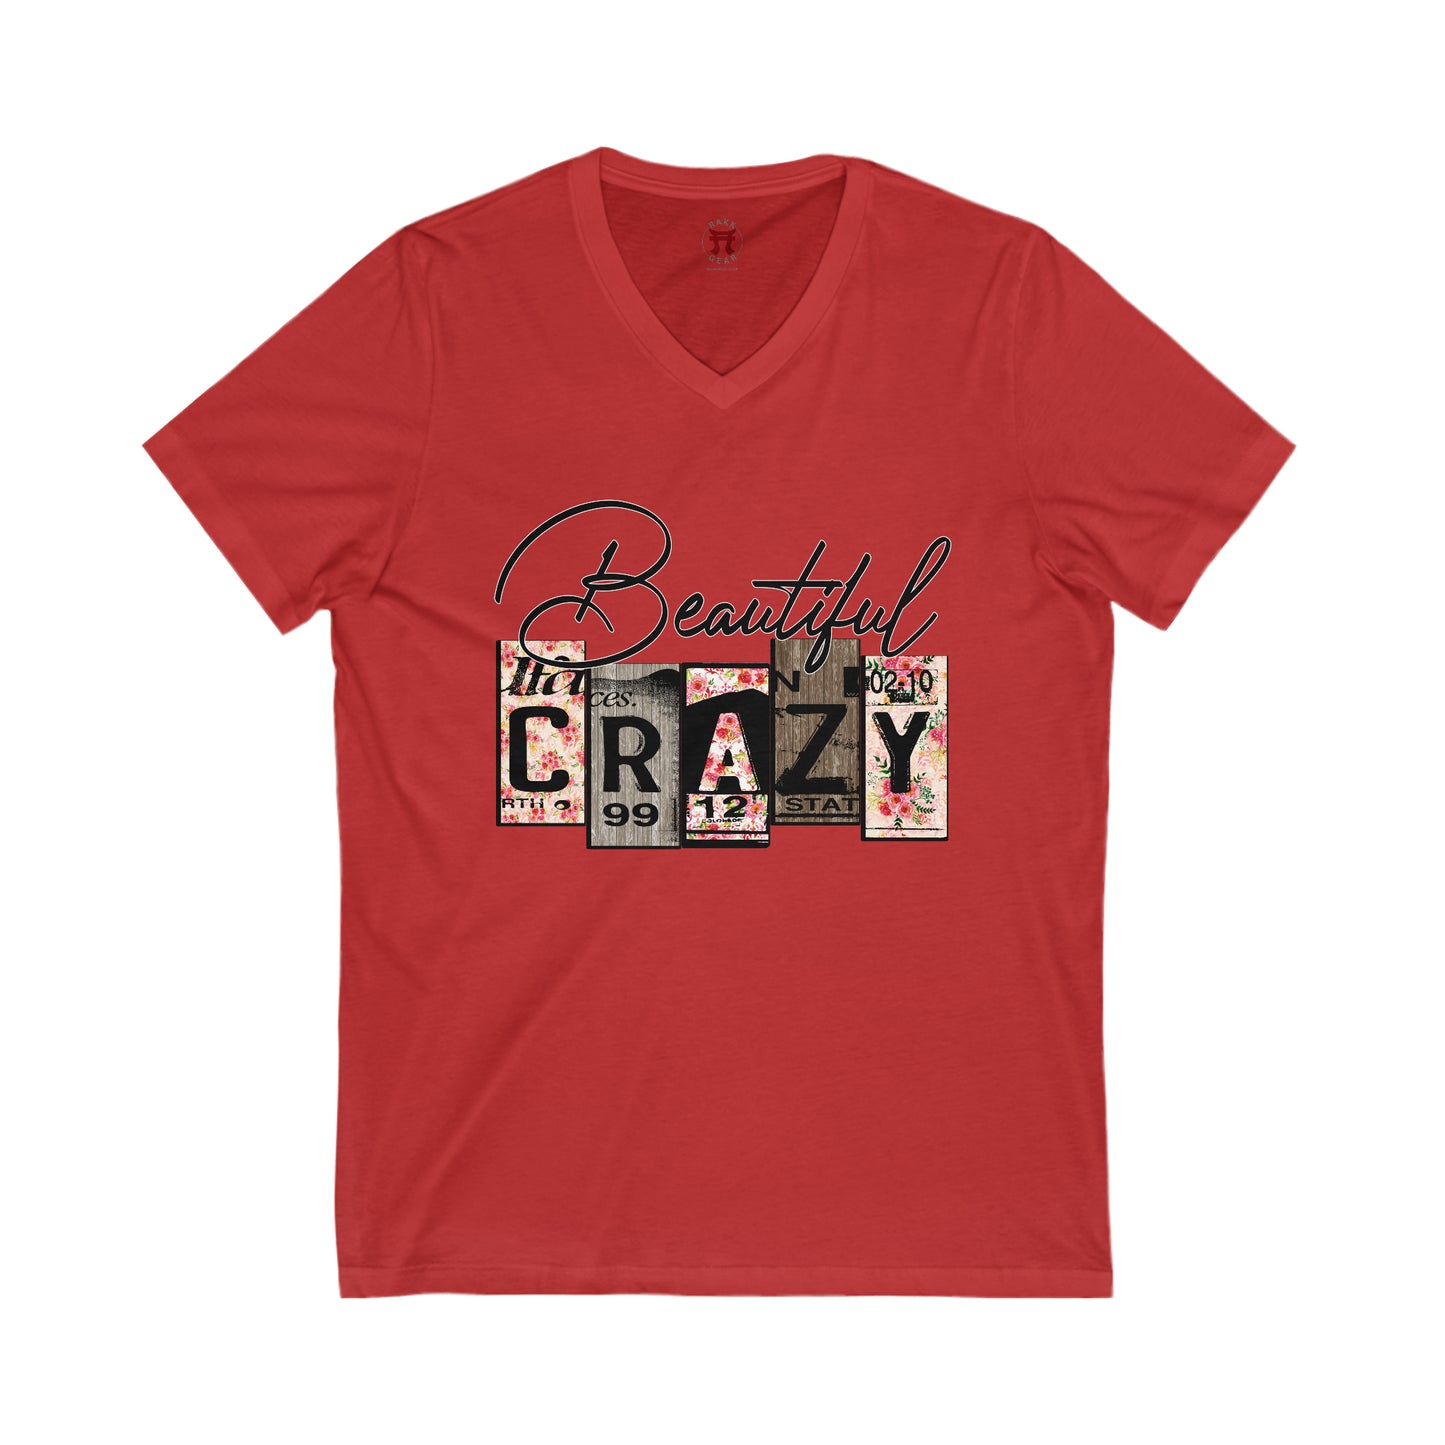 Rakkgear "Beautiful Crazy" Women's Red V-Neck T-shirt